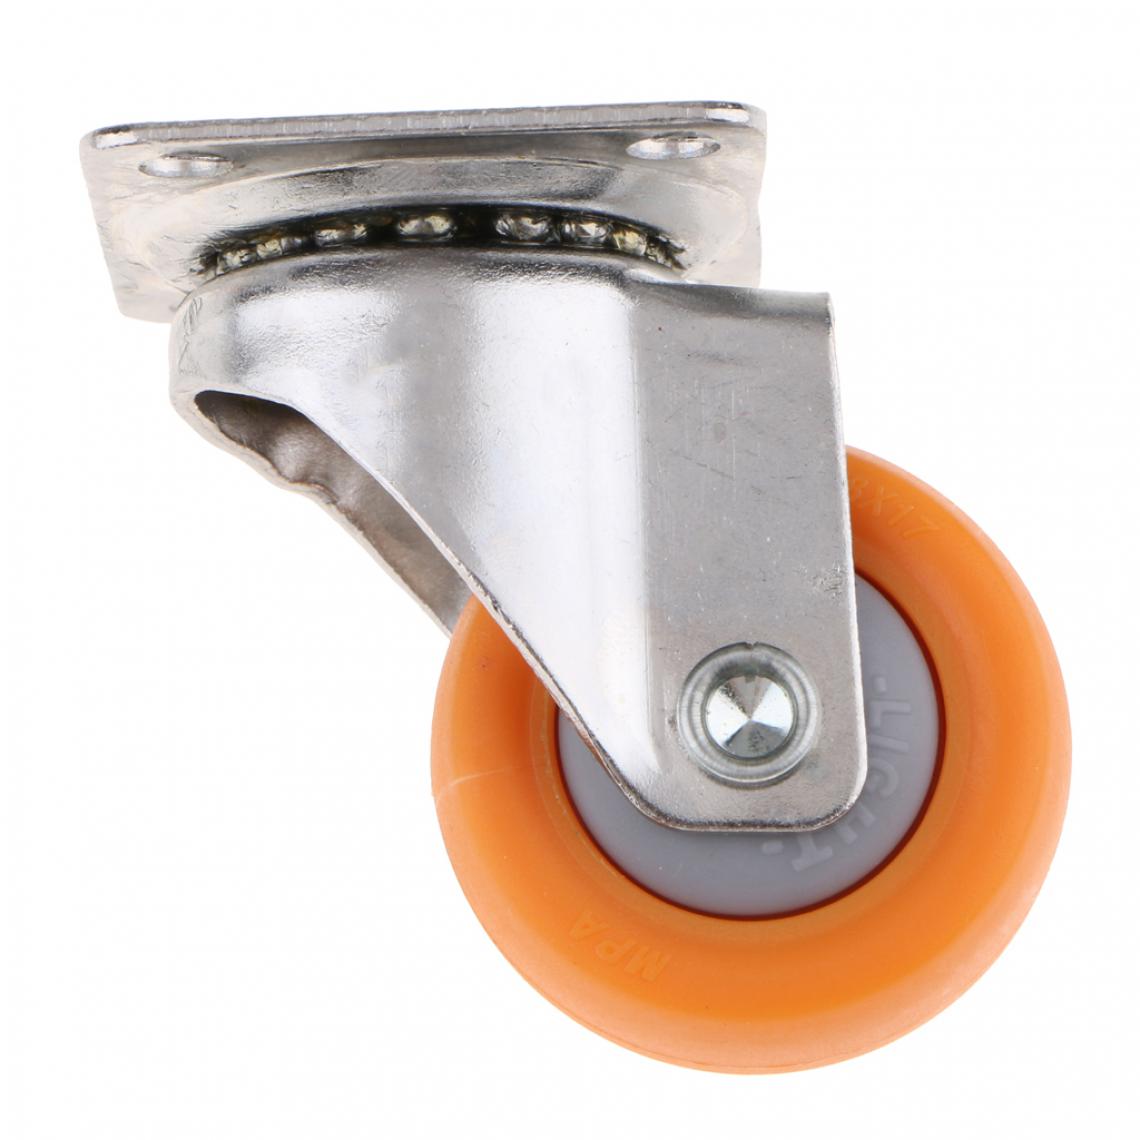 marque generique - Nylon Toutes Les Roulettes Pivotantes Roues Plaque Roulette Pour Chariots Roue Orange 1.5 Pouces - Pieds & roulettes pour meuble